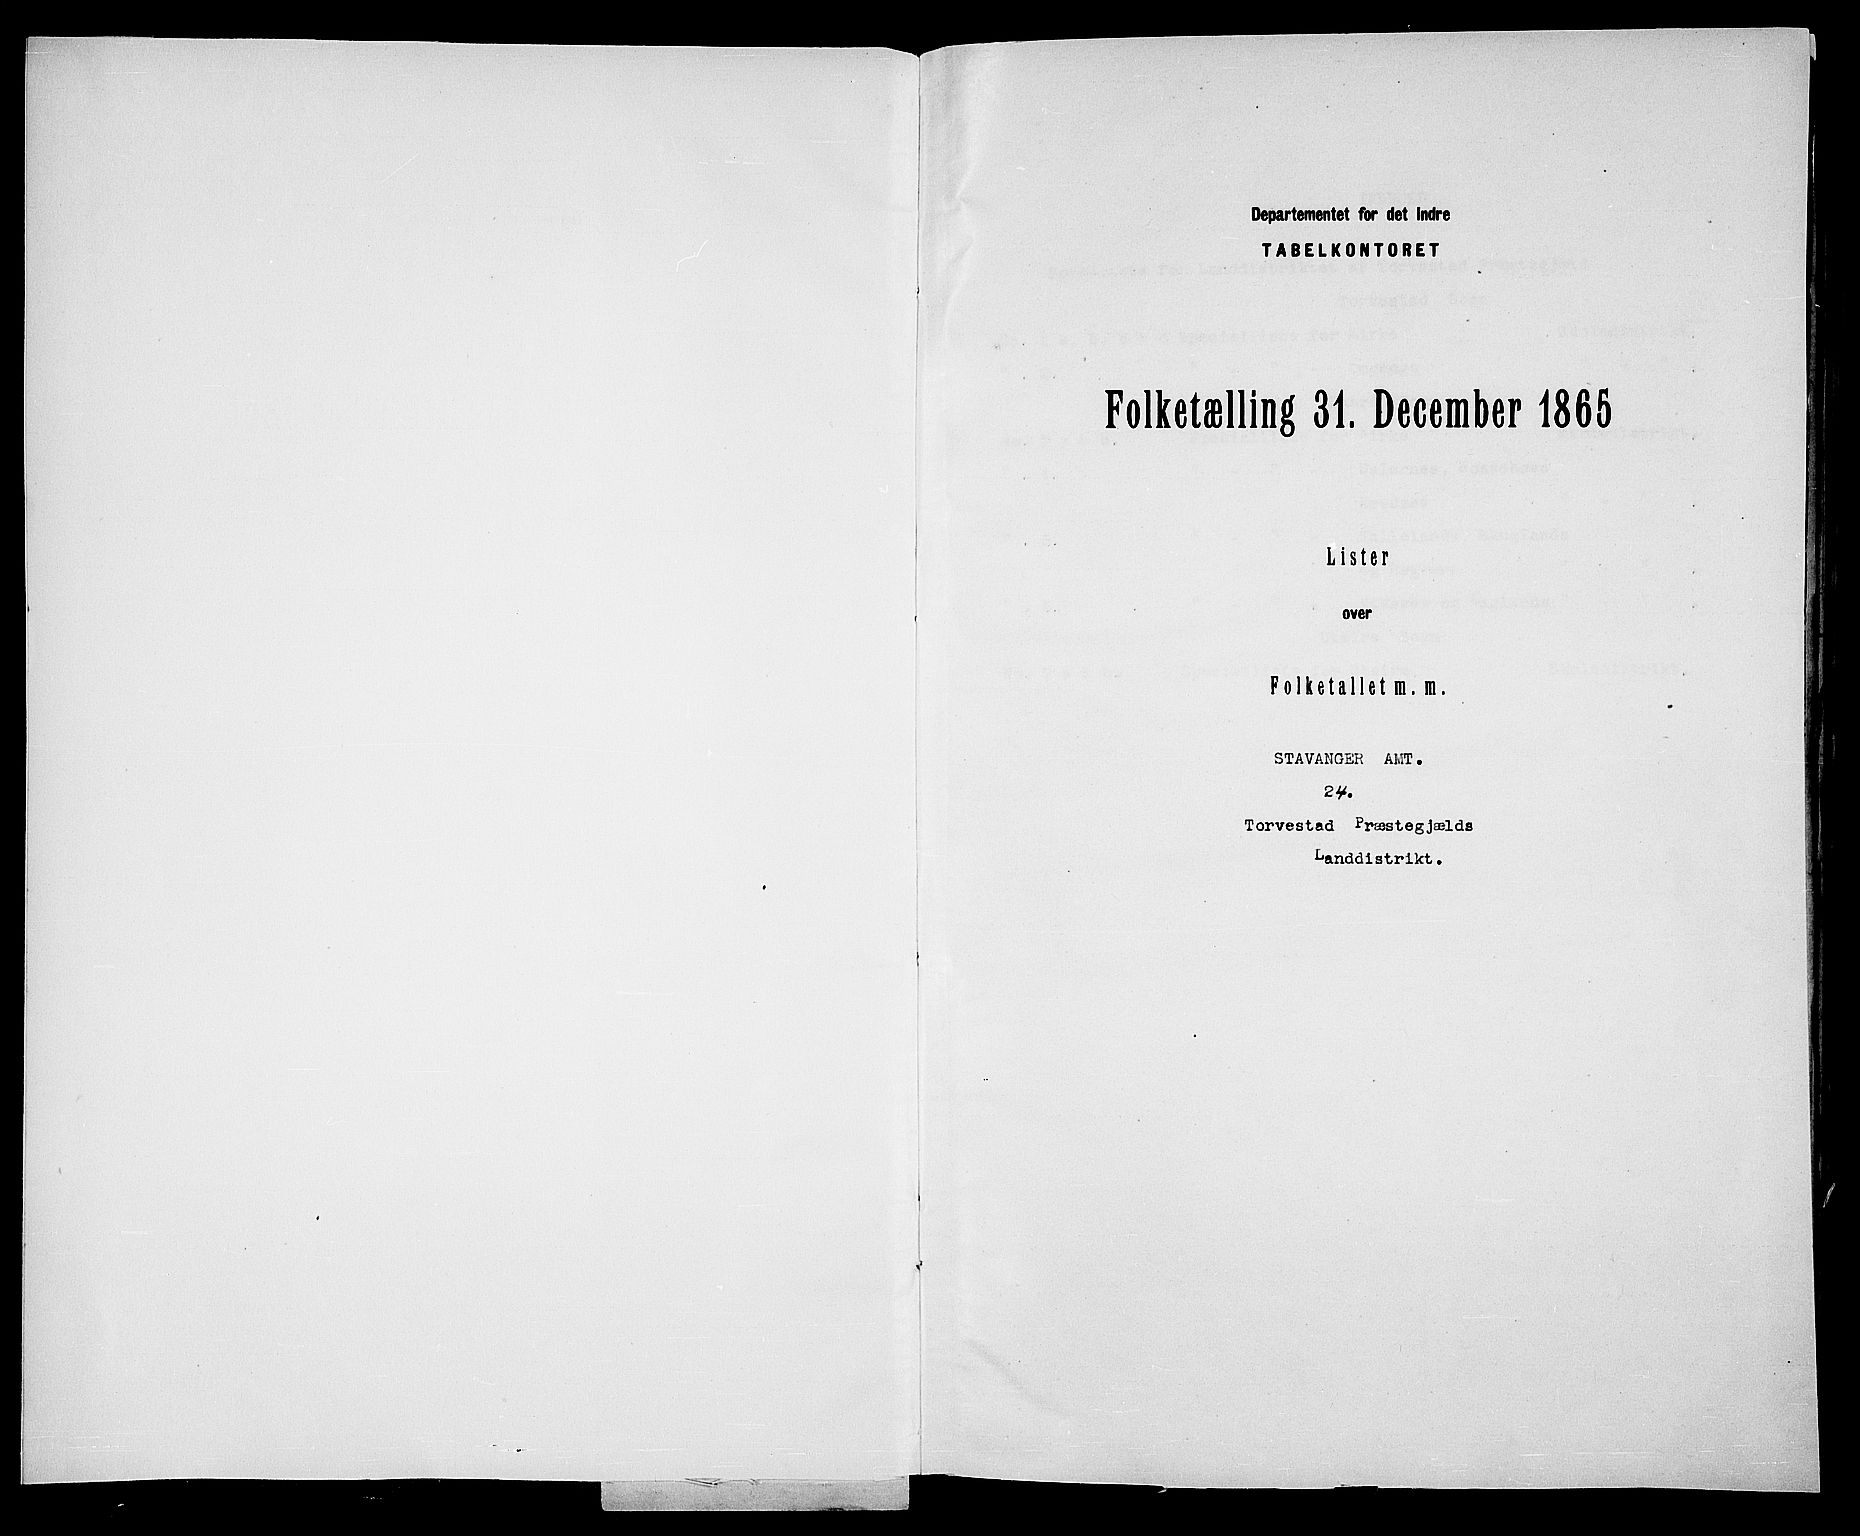 RA, Folketelling 1865 for 1152L Torvastad prestegjeld, Torvastad sokn, Skåre sokn og Utsira sokn, 1865, s. 2